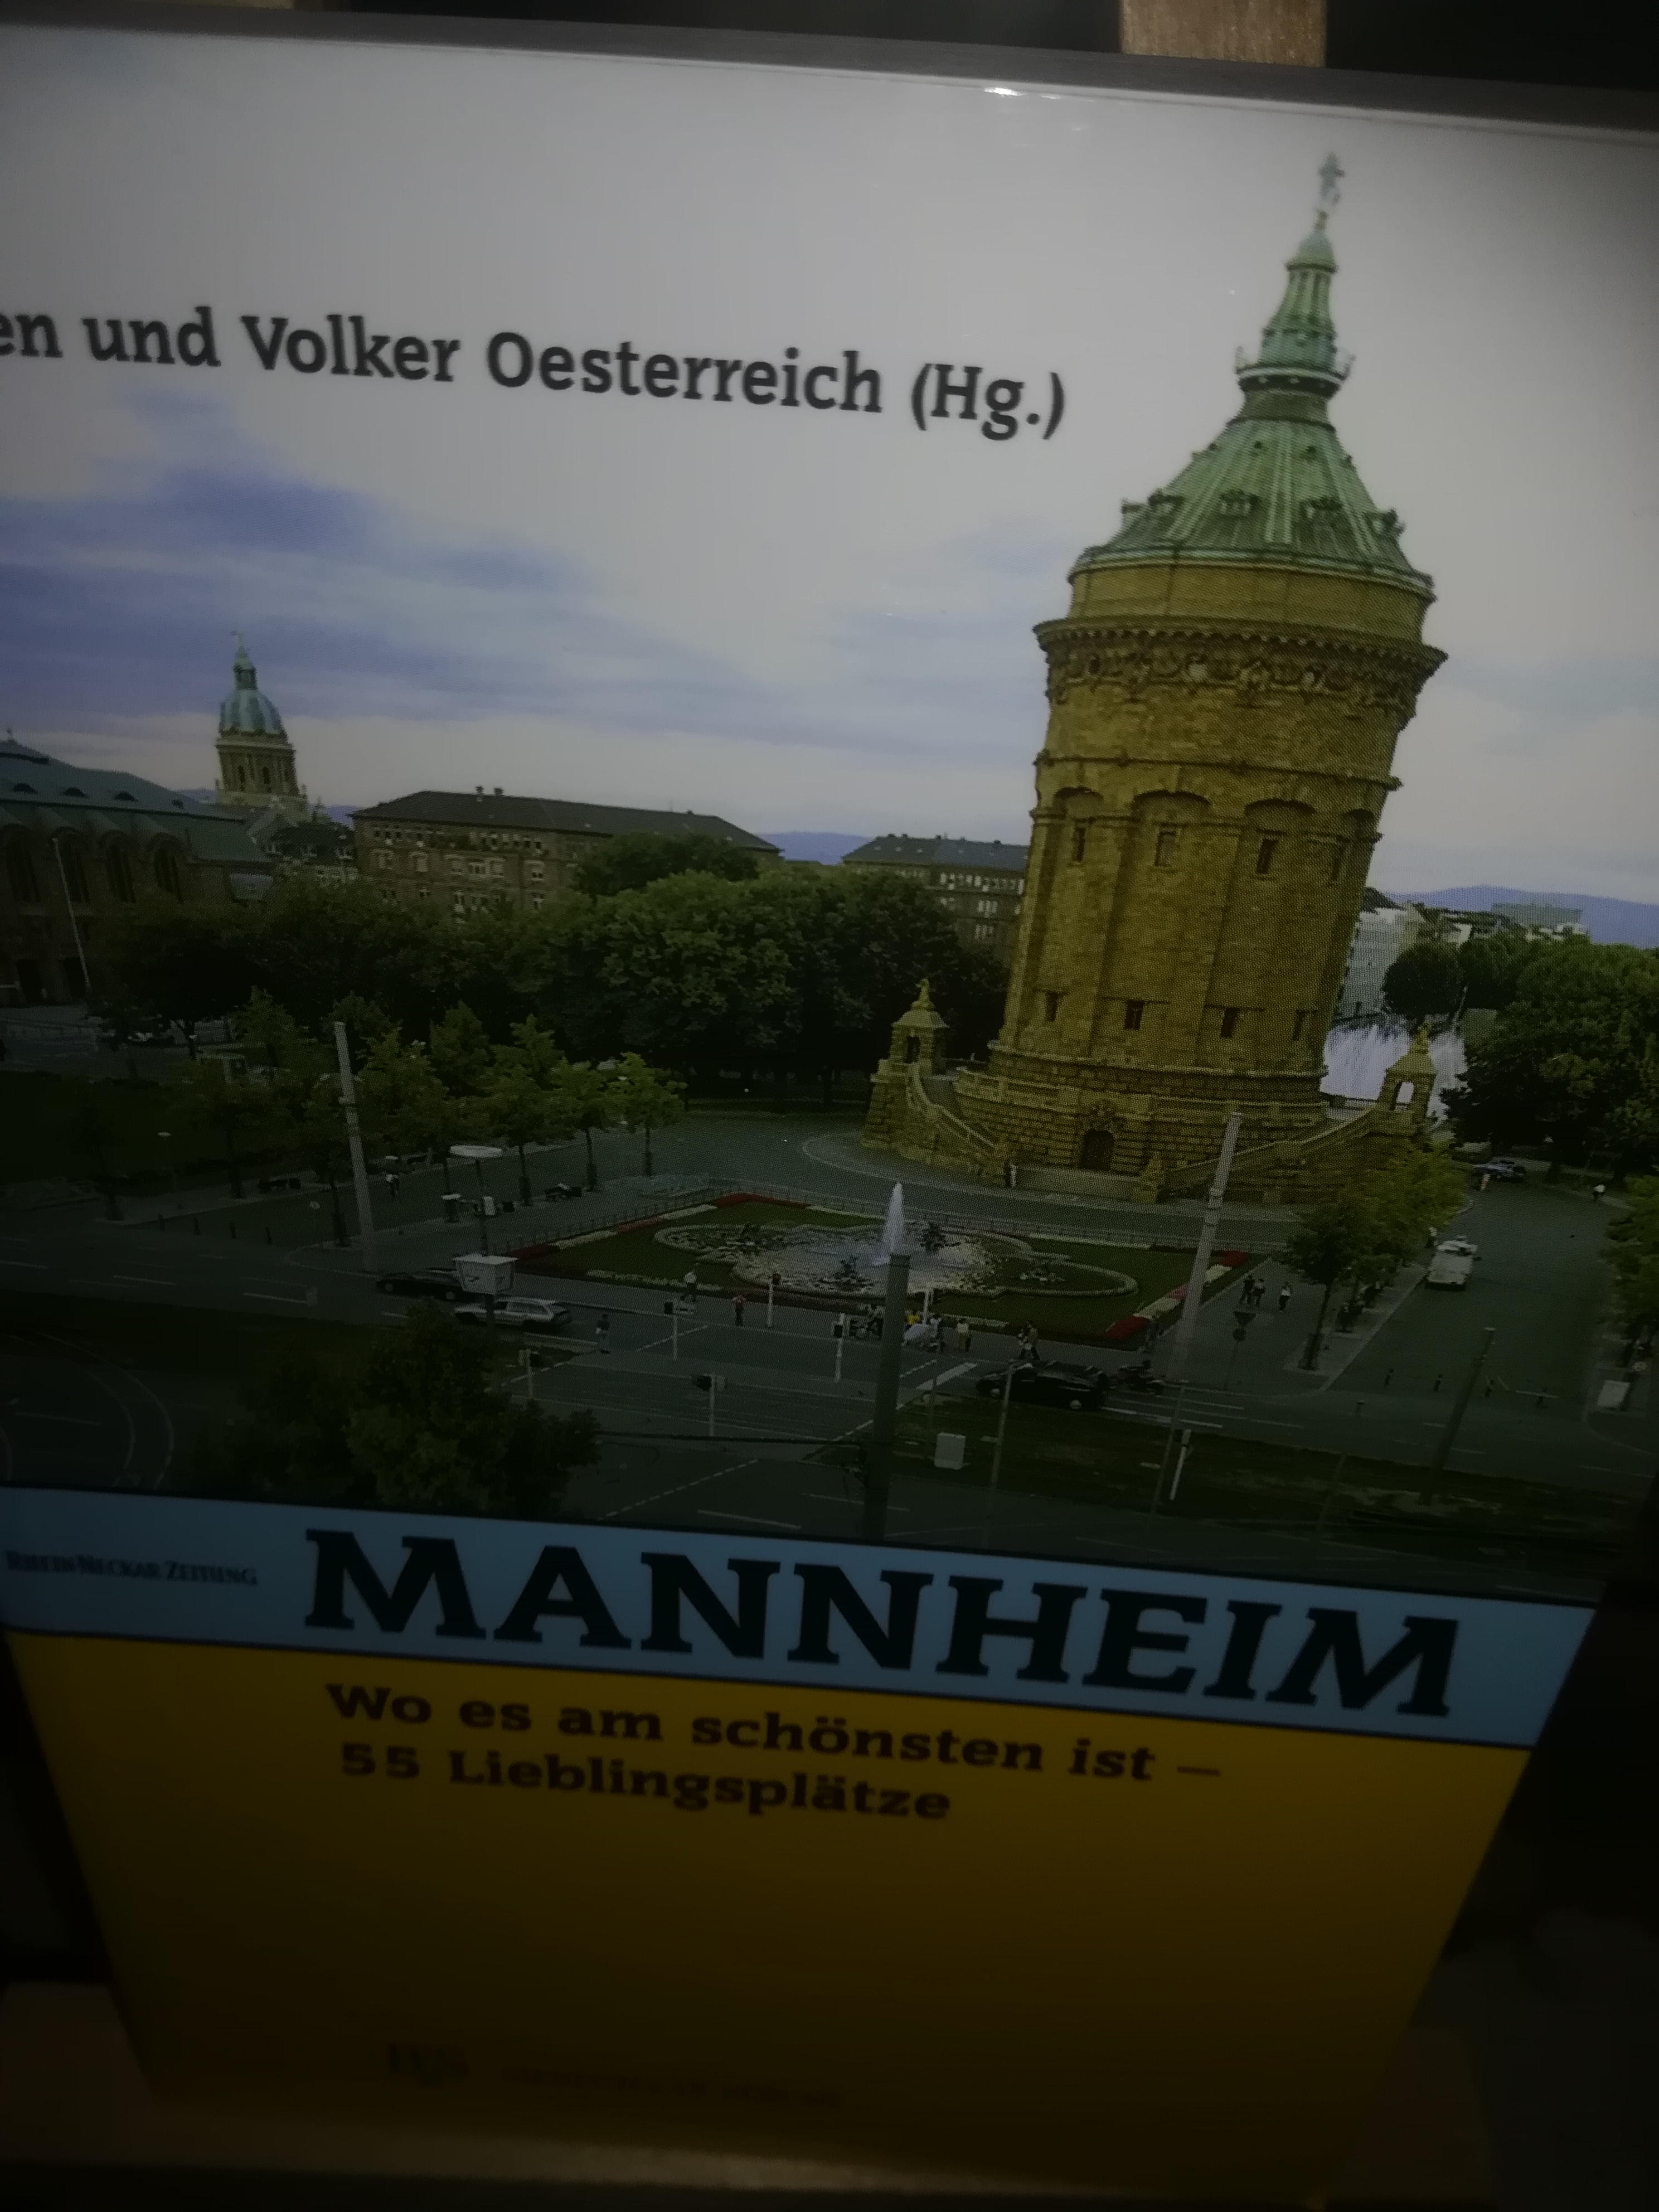 Mannheim wo es am schönsten ist, 55 Lieblingsplätze - Oesterreich Carmen und Volker